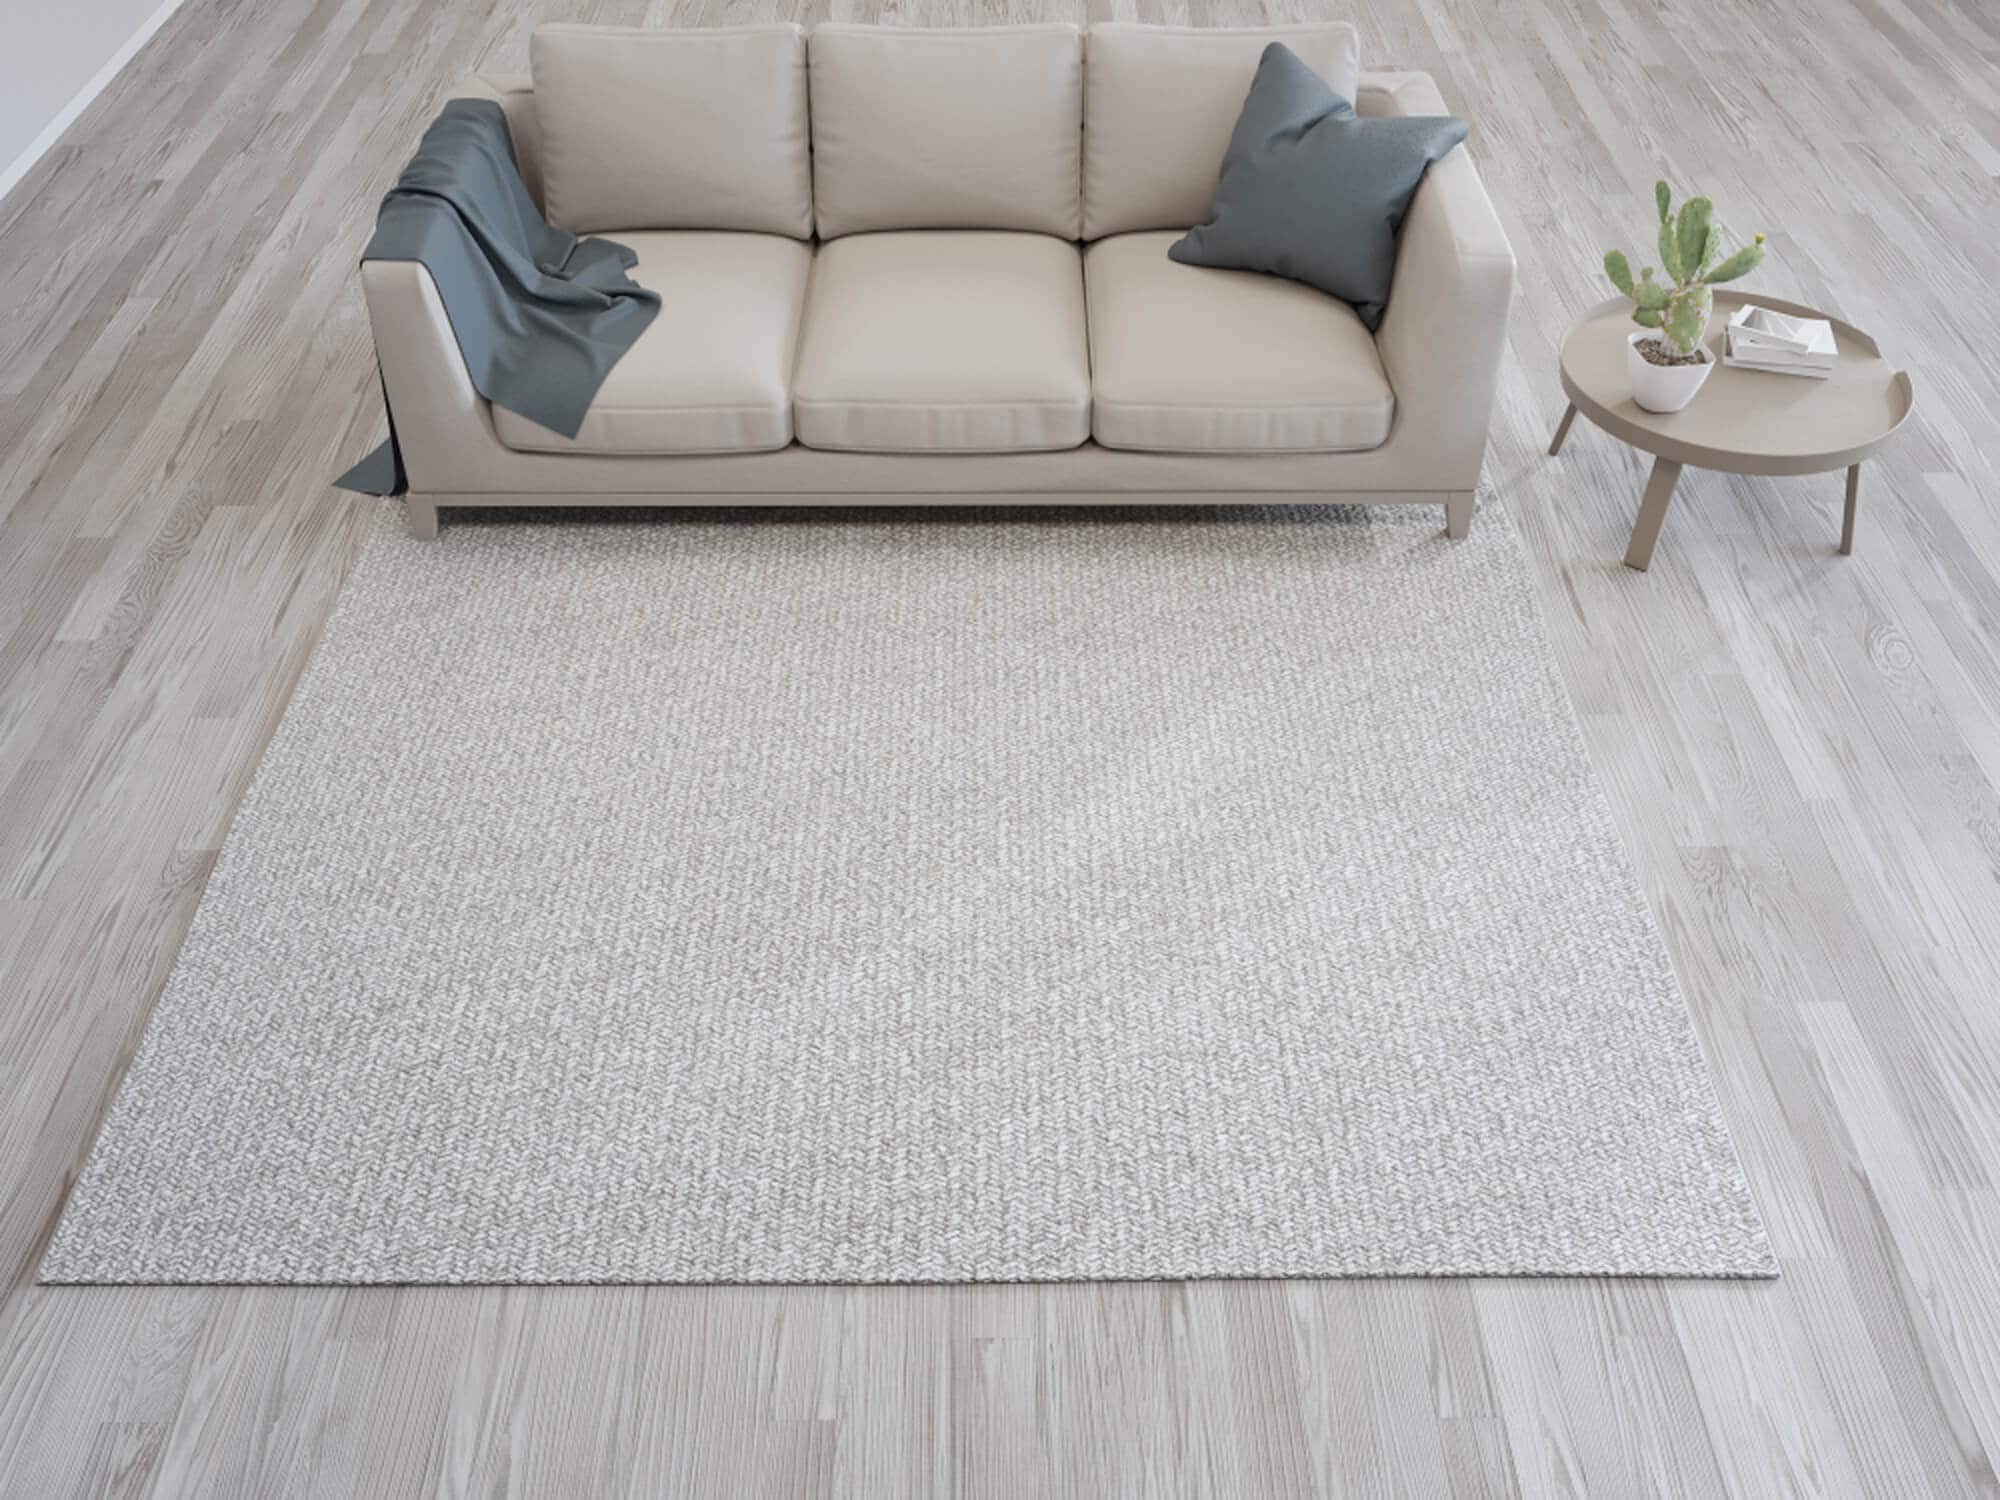 שטיח בהיר לעיצוב הסלון במבט על